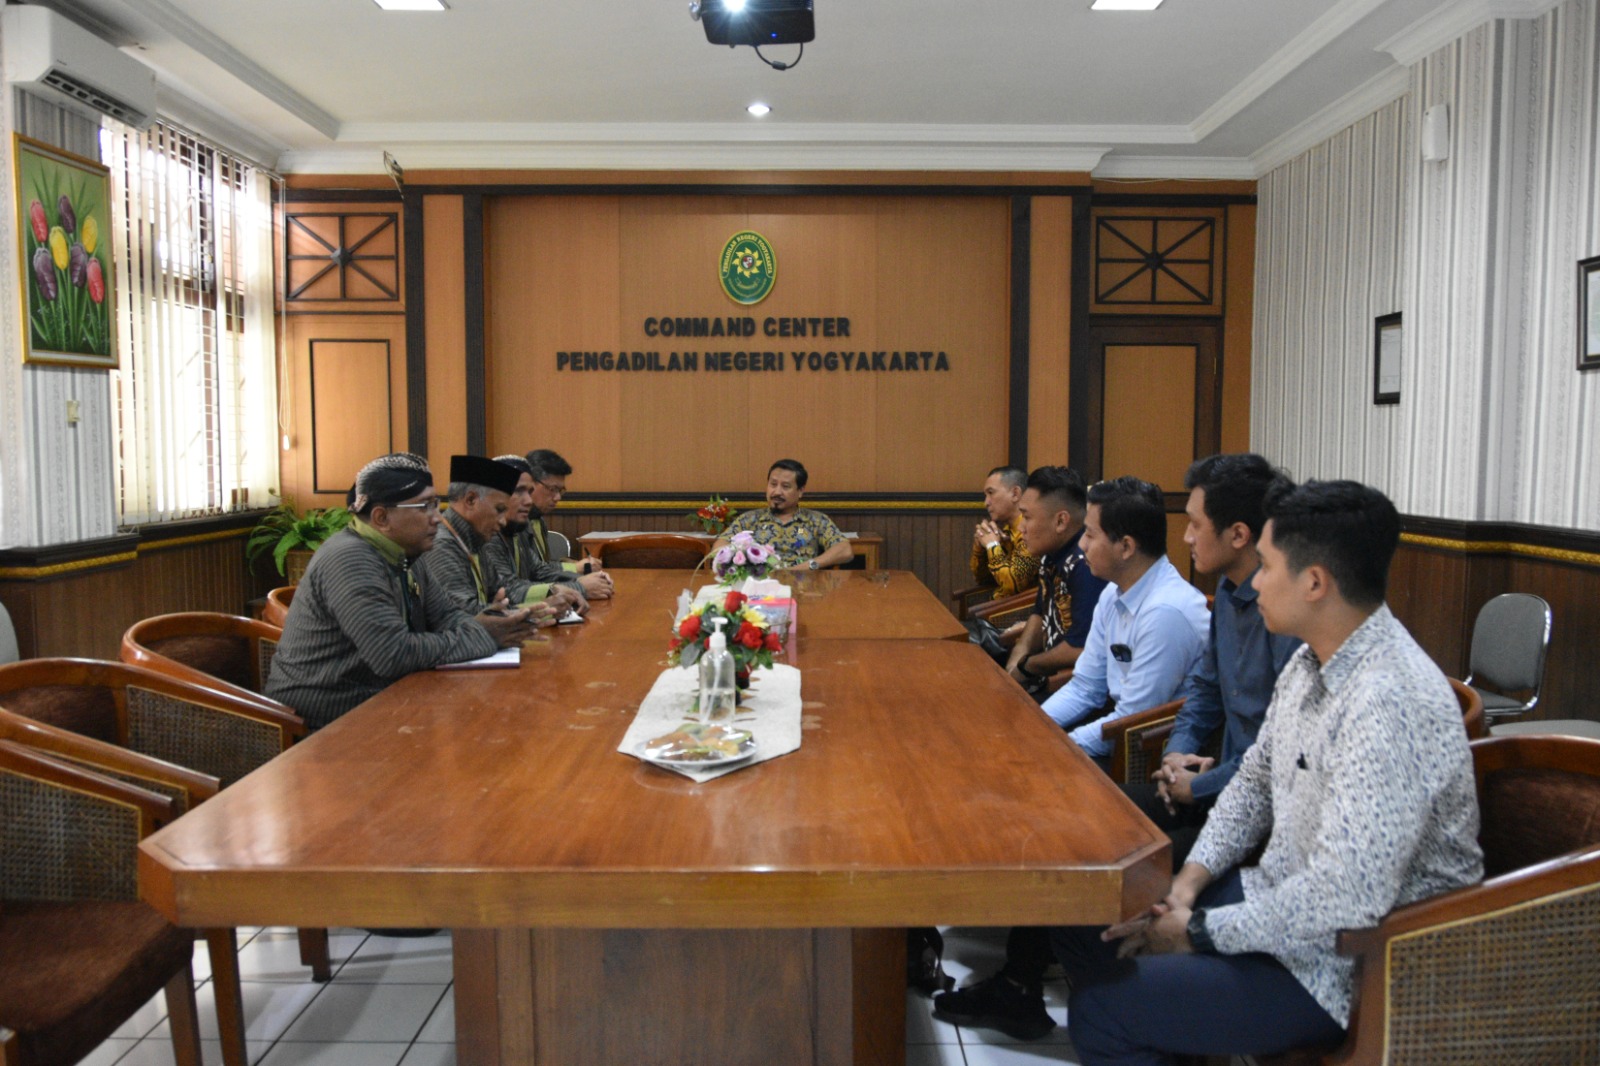 Audiensi dan Silaturahmi PERADI Kota Yogyakarta ke Pengadilan Negeri Yogyakarta